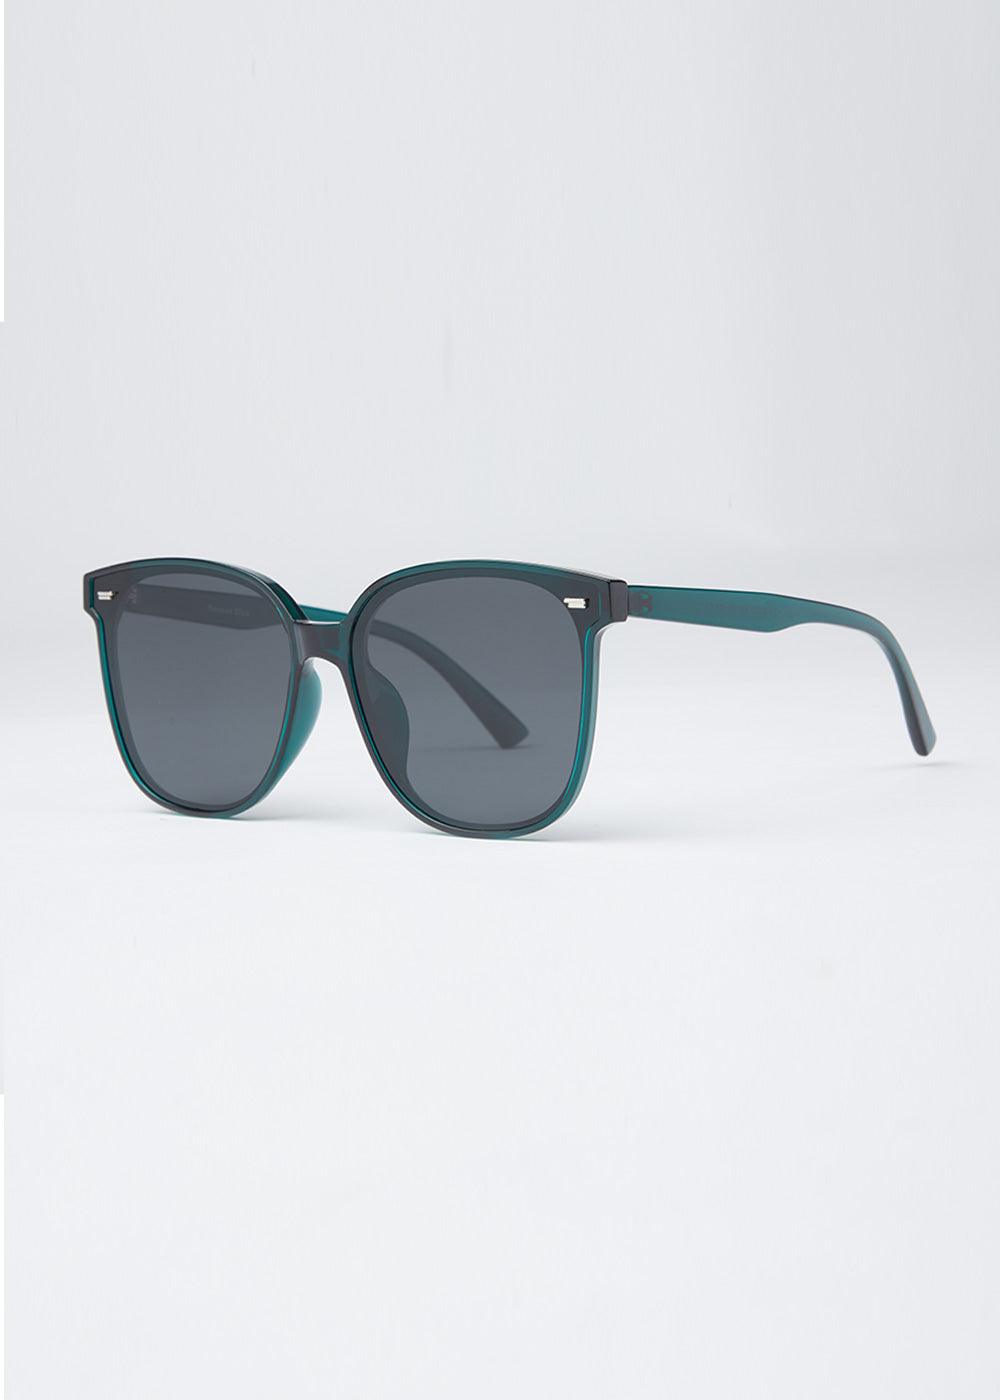 Turquoise Green Unisex Square Sunglasses